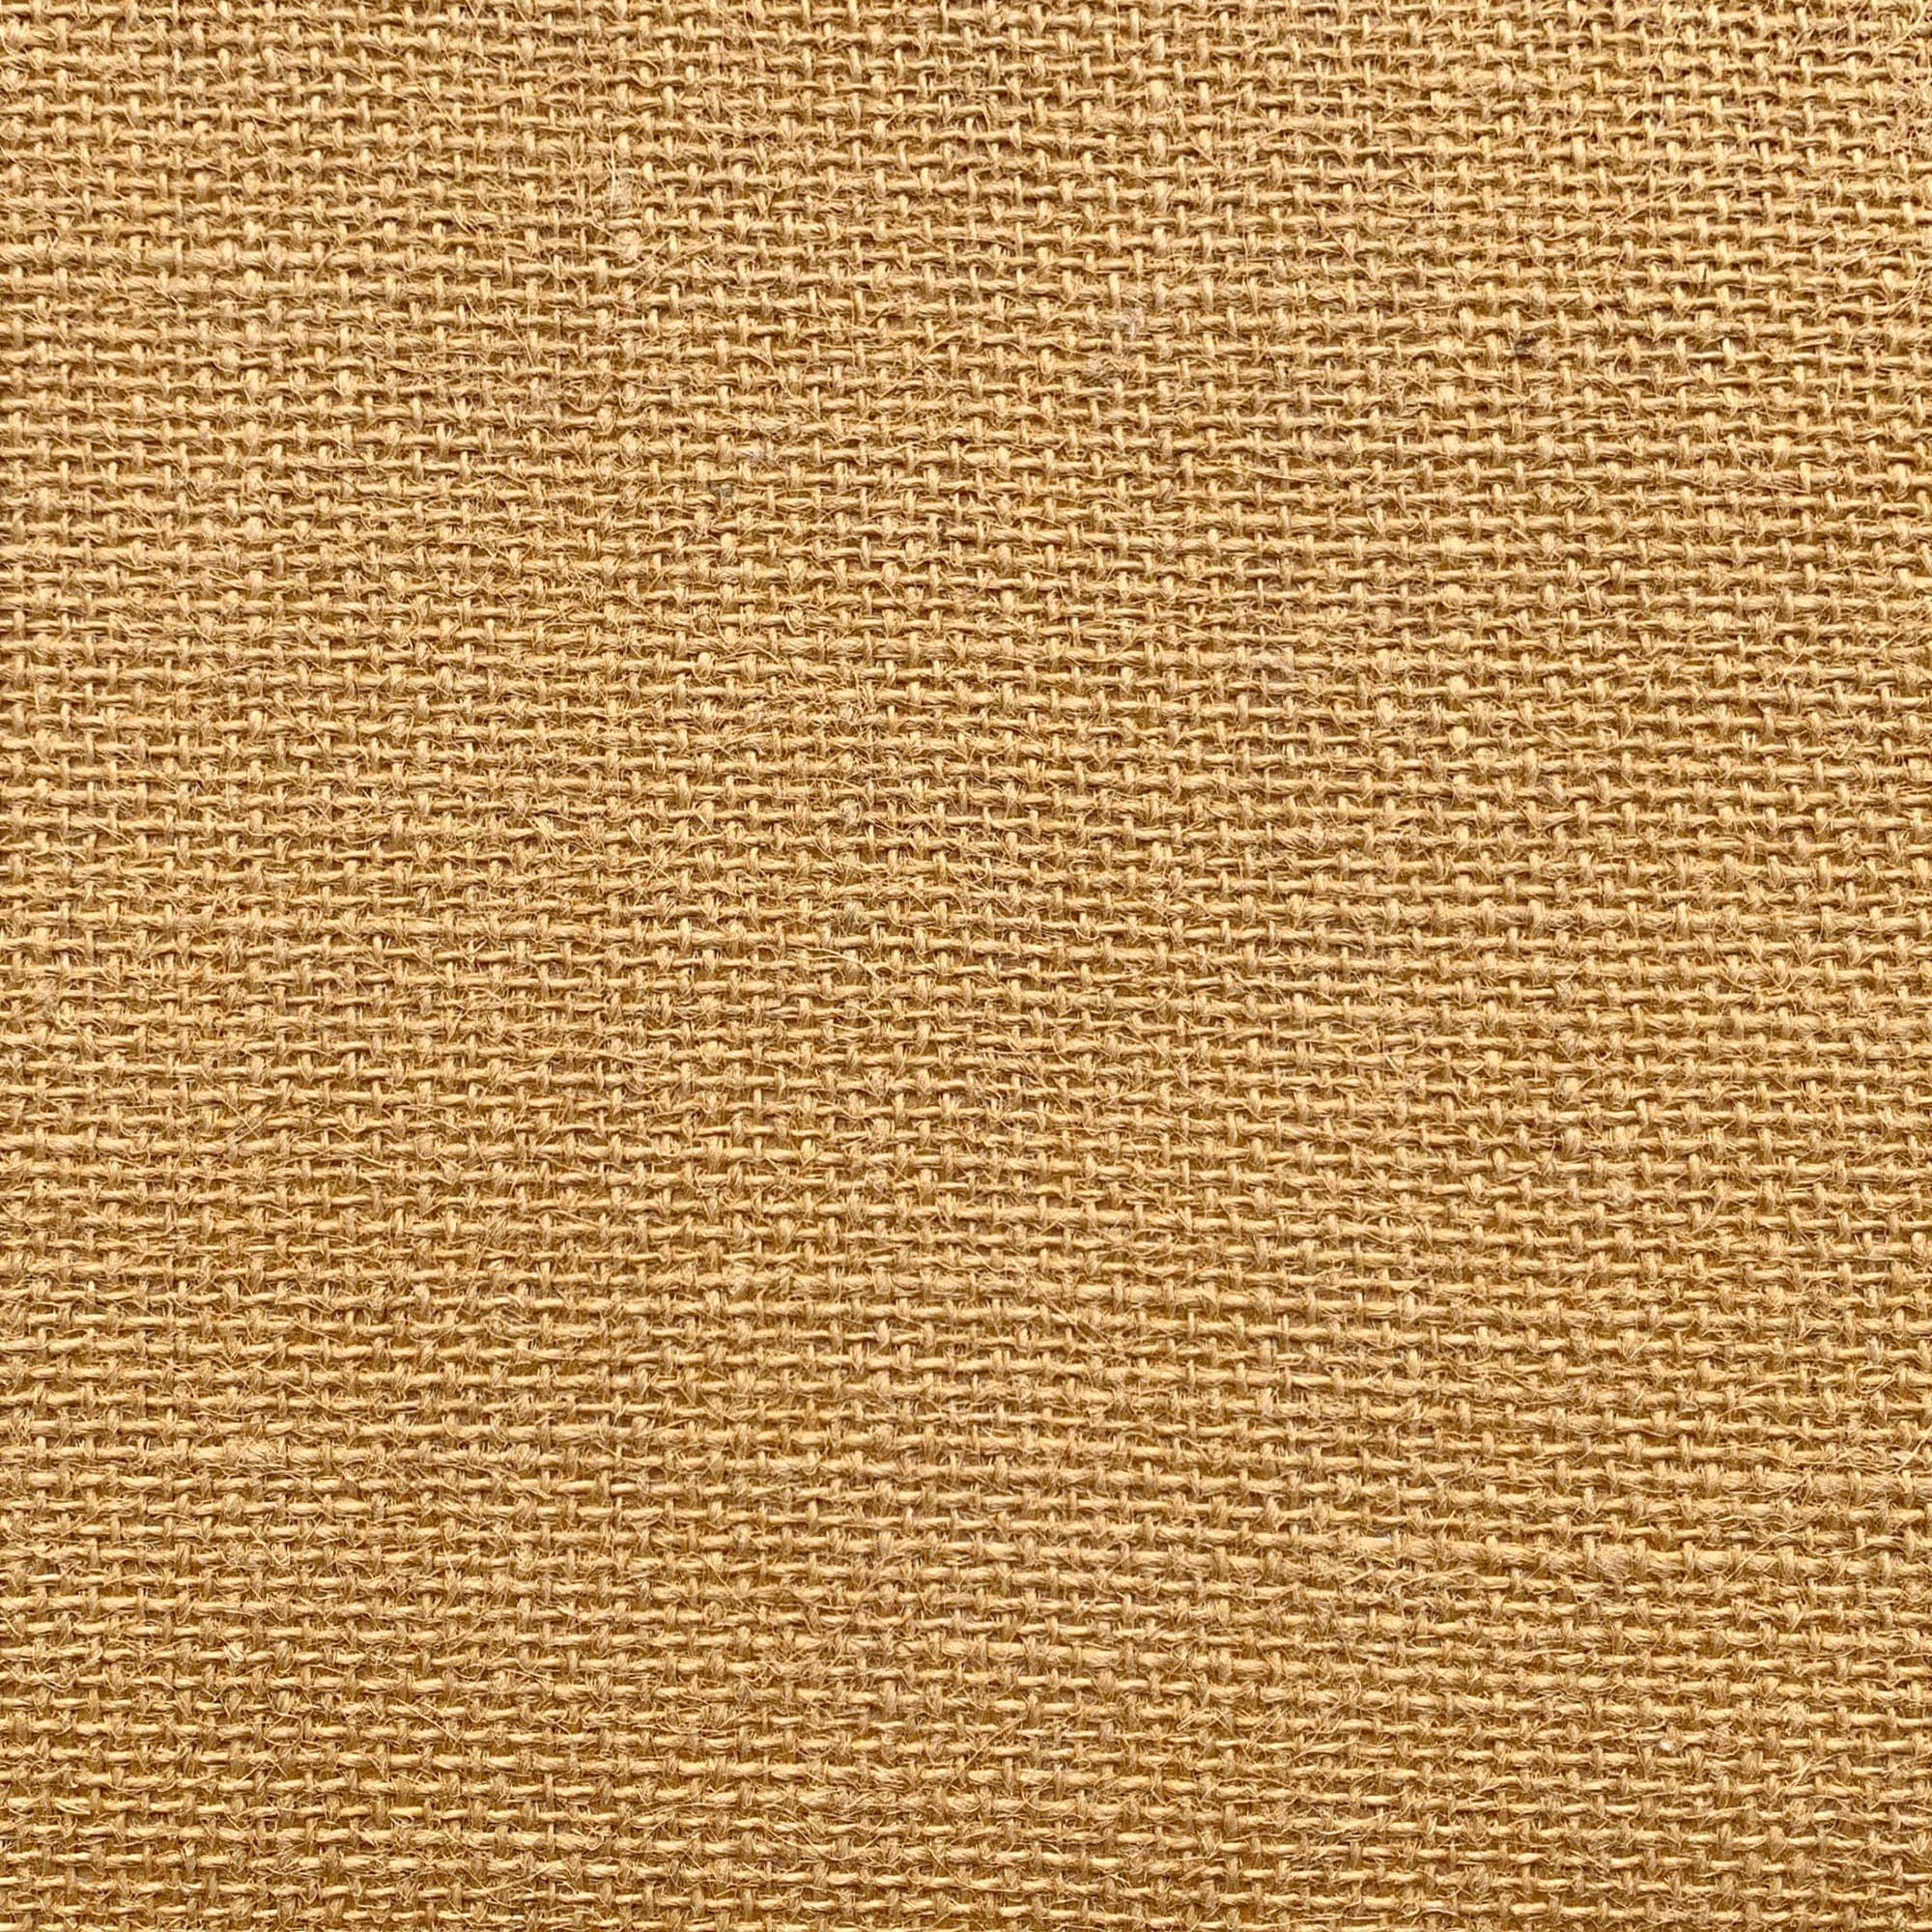 織物壁紙 ジュート W915mm×L5.5m WL-WP014-03-G141 壁紙では珍しいざっくりとした織り目が特徴